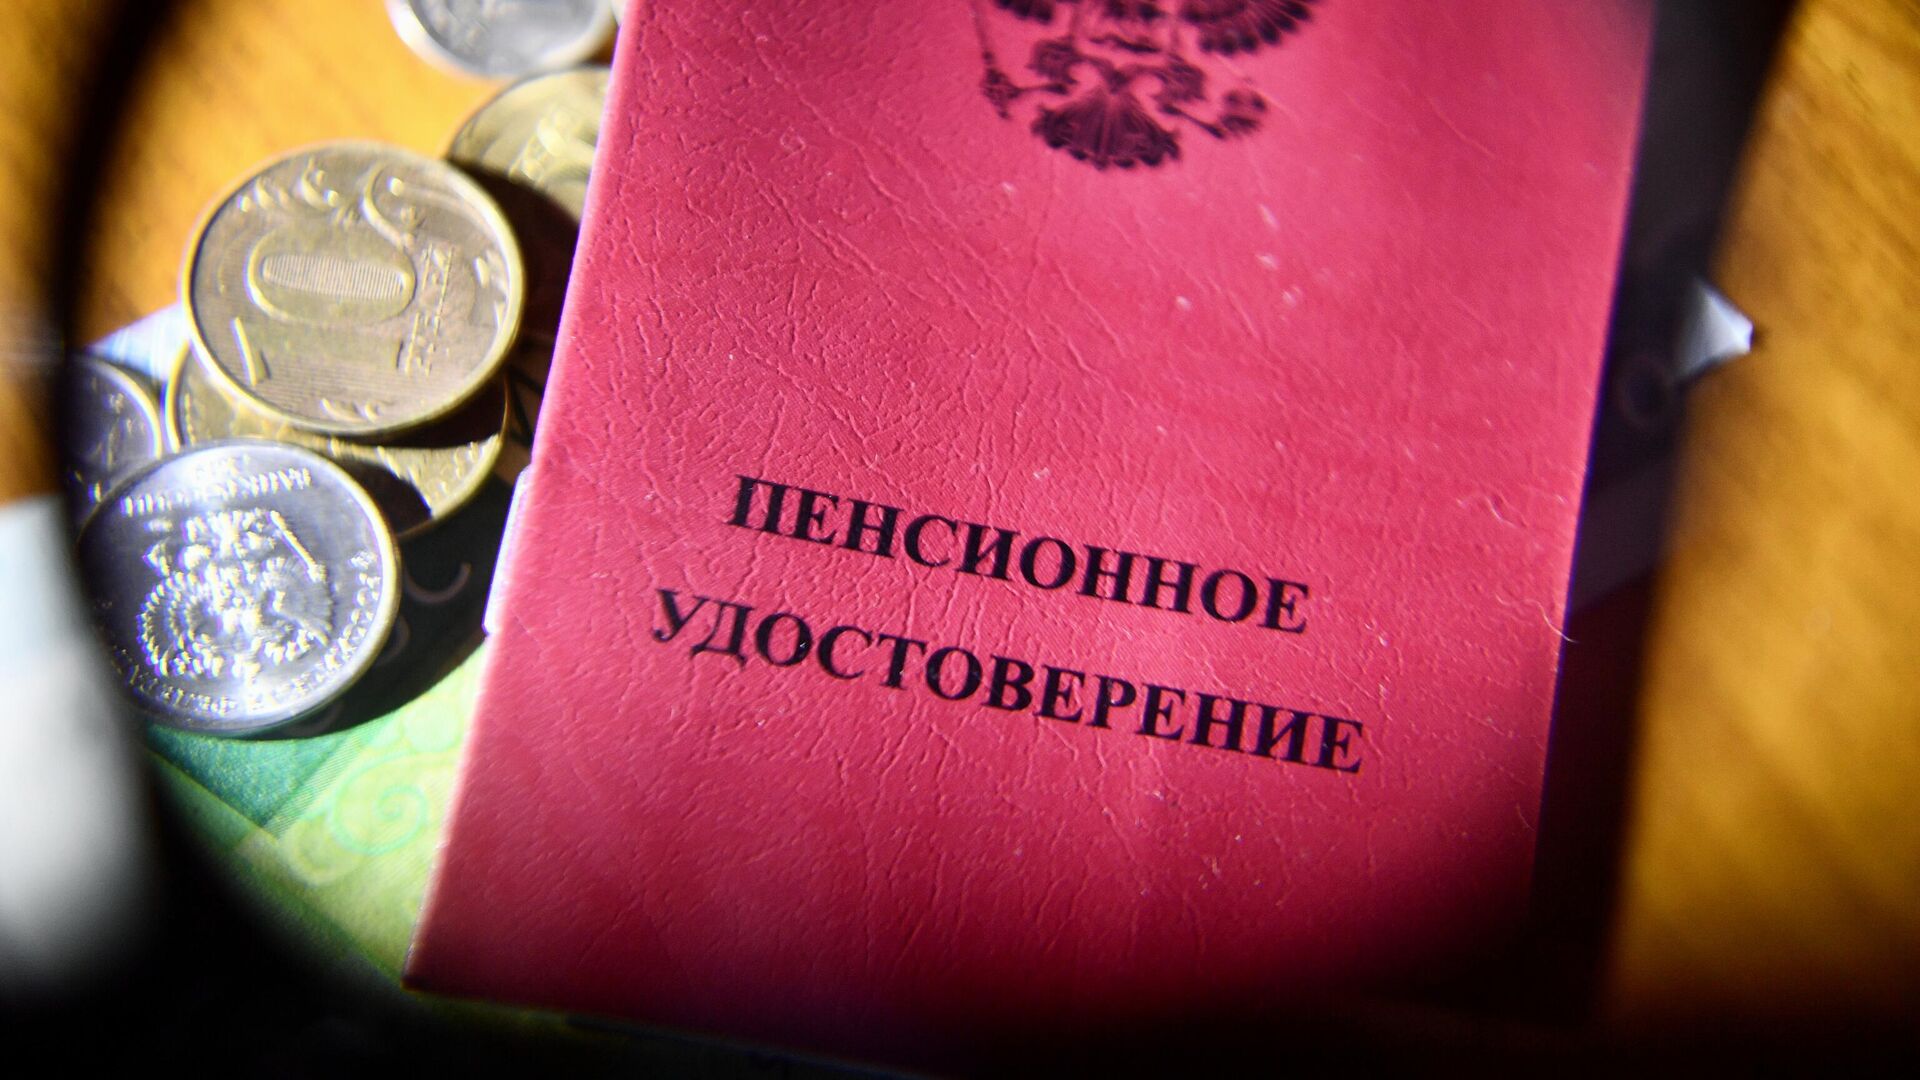 Пенсионное удостоверение - РИА Новости, 1920, 22.10.2021